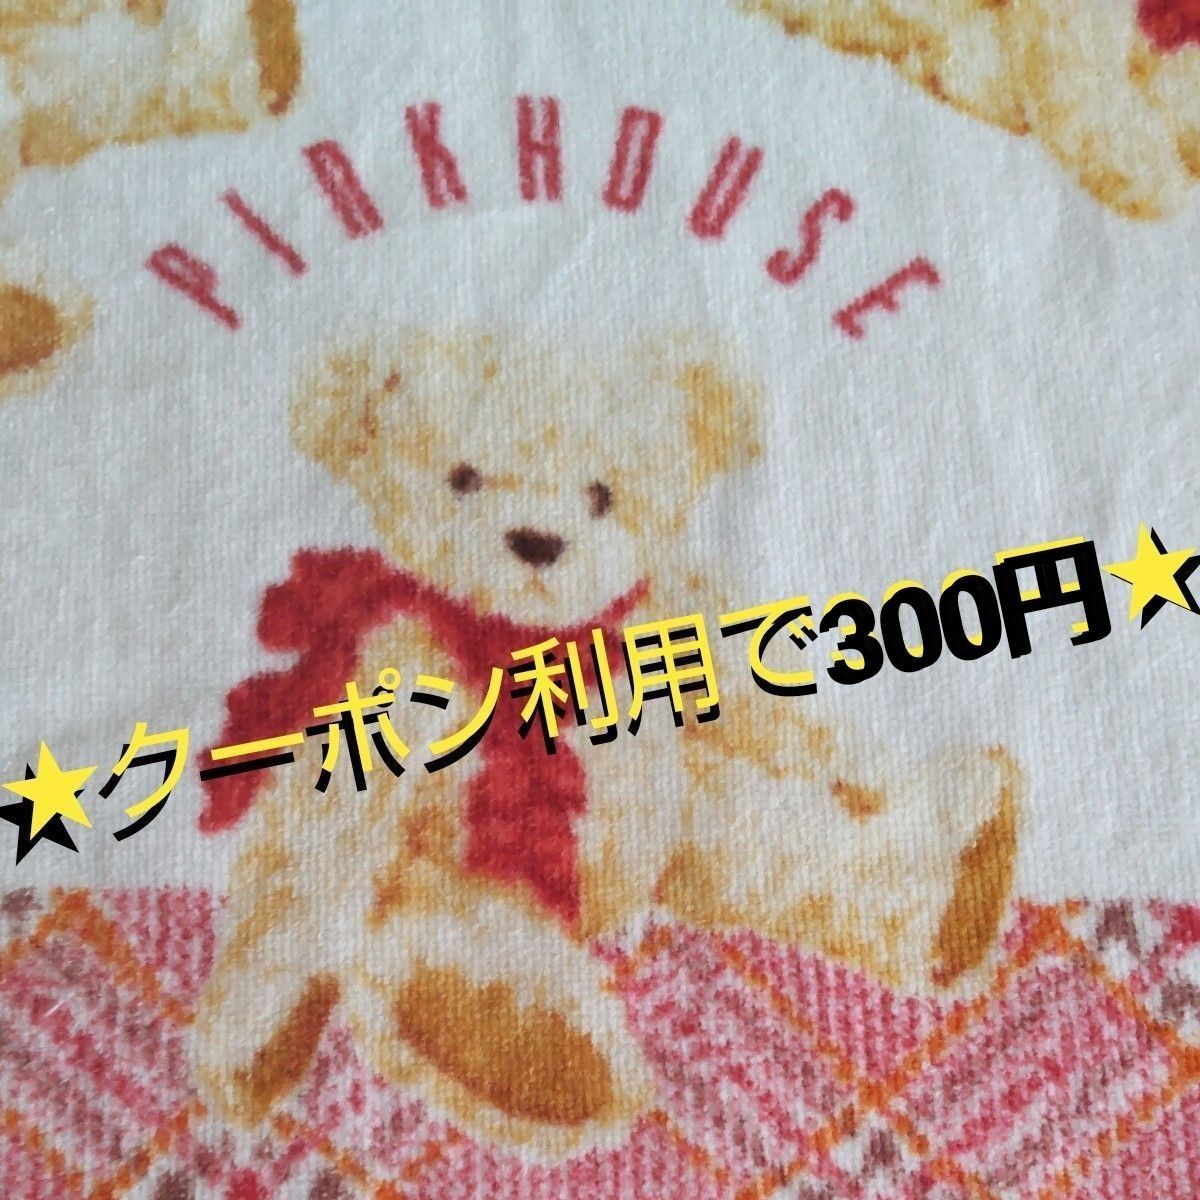  ★クーポン利用で300円★ ピンクハウス   タオル  